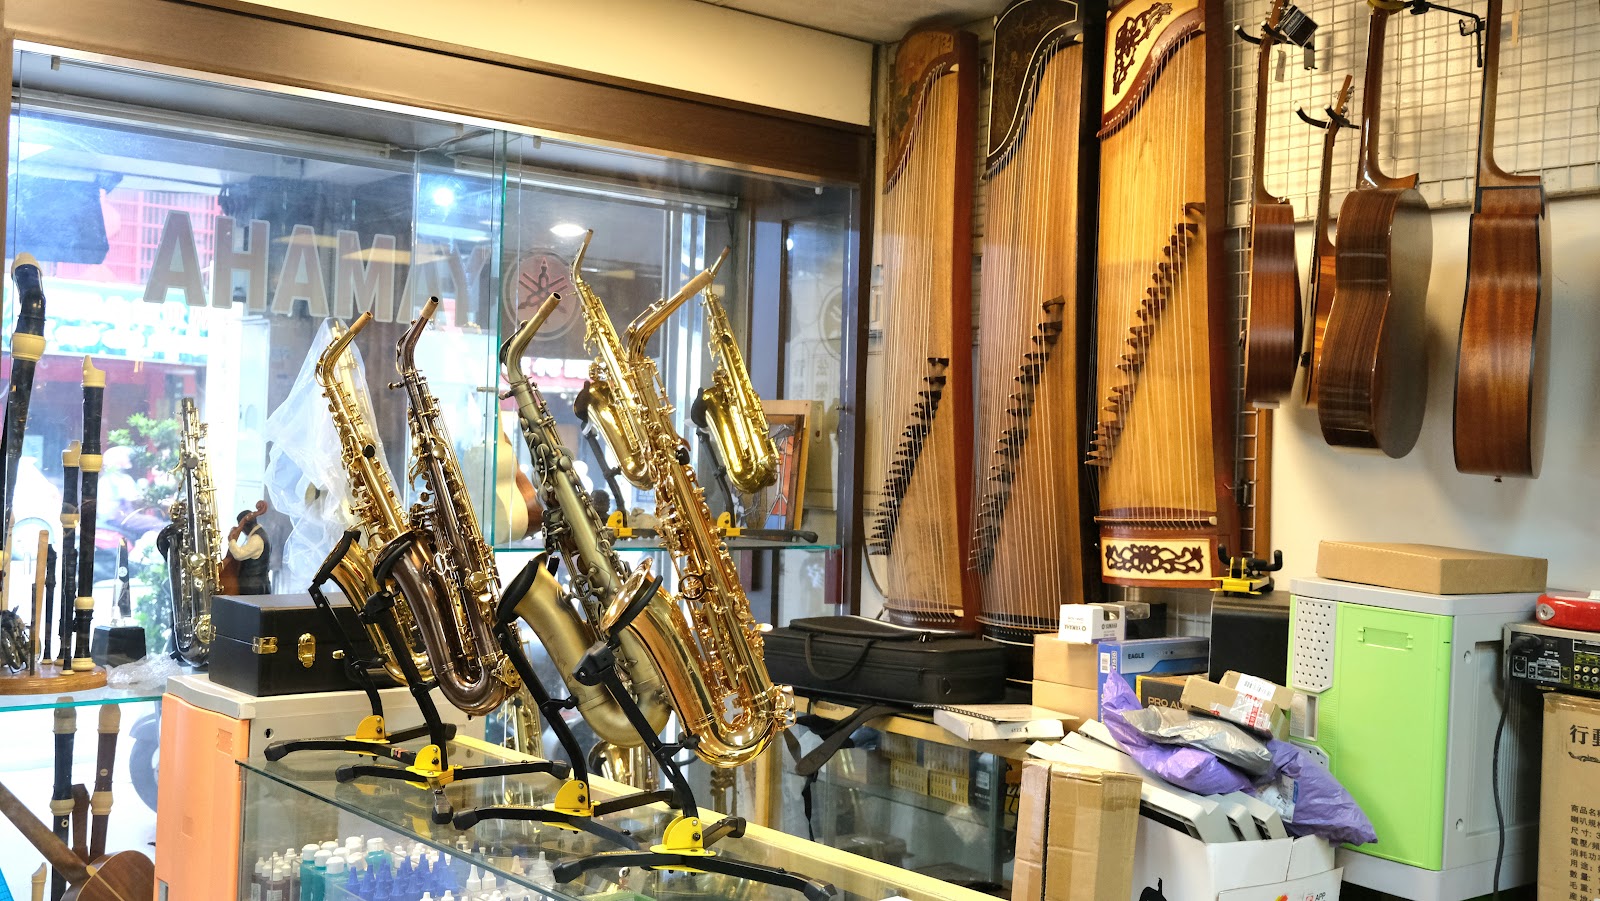 【桃園樂器行推薦】山河樂器 YAMAKAWA樂器百貨，多款台灣製造樂器現貨、樂器保養維修 專業師資及練琴教室